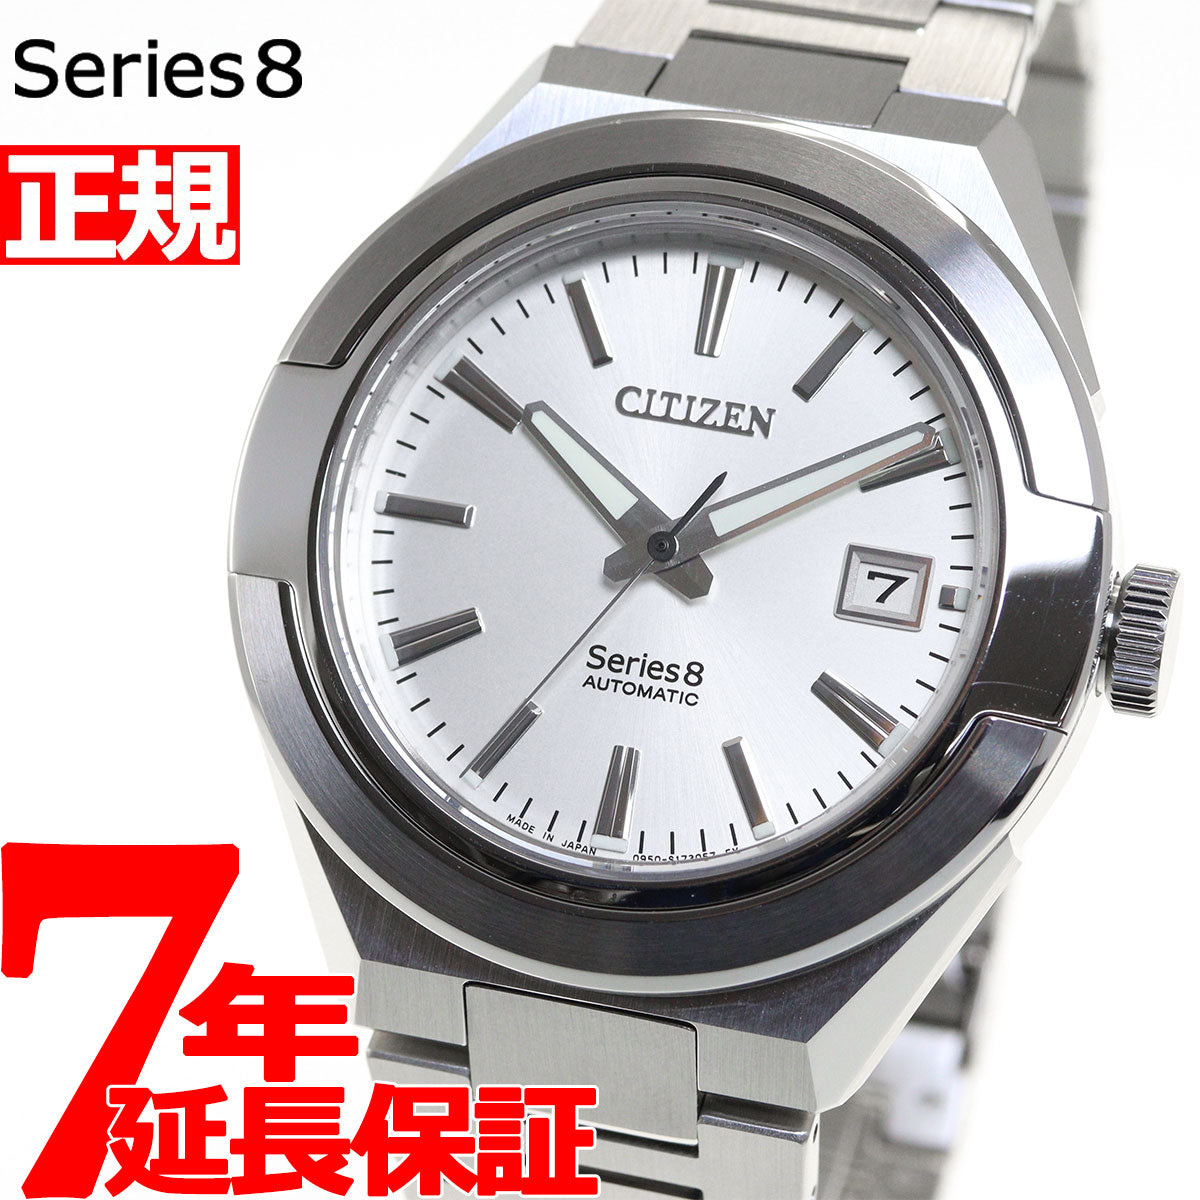 シチズン CITIZEN シリーズエイト Series 8 870 腕時計 メンズ メカニカル Cal.0950 自動巻き 日本製  NA1000-88A シルバー【36回無金利ローン】